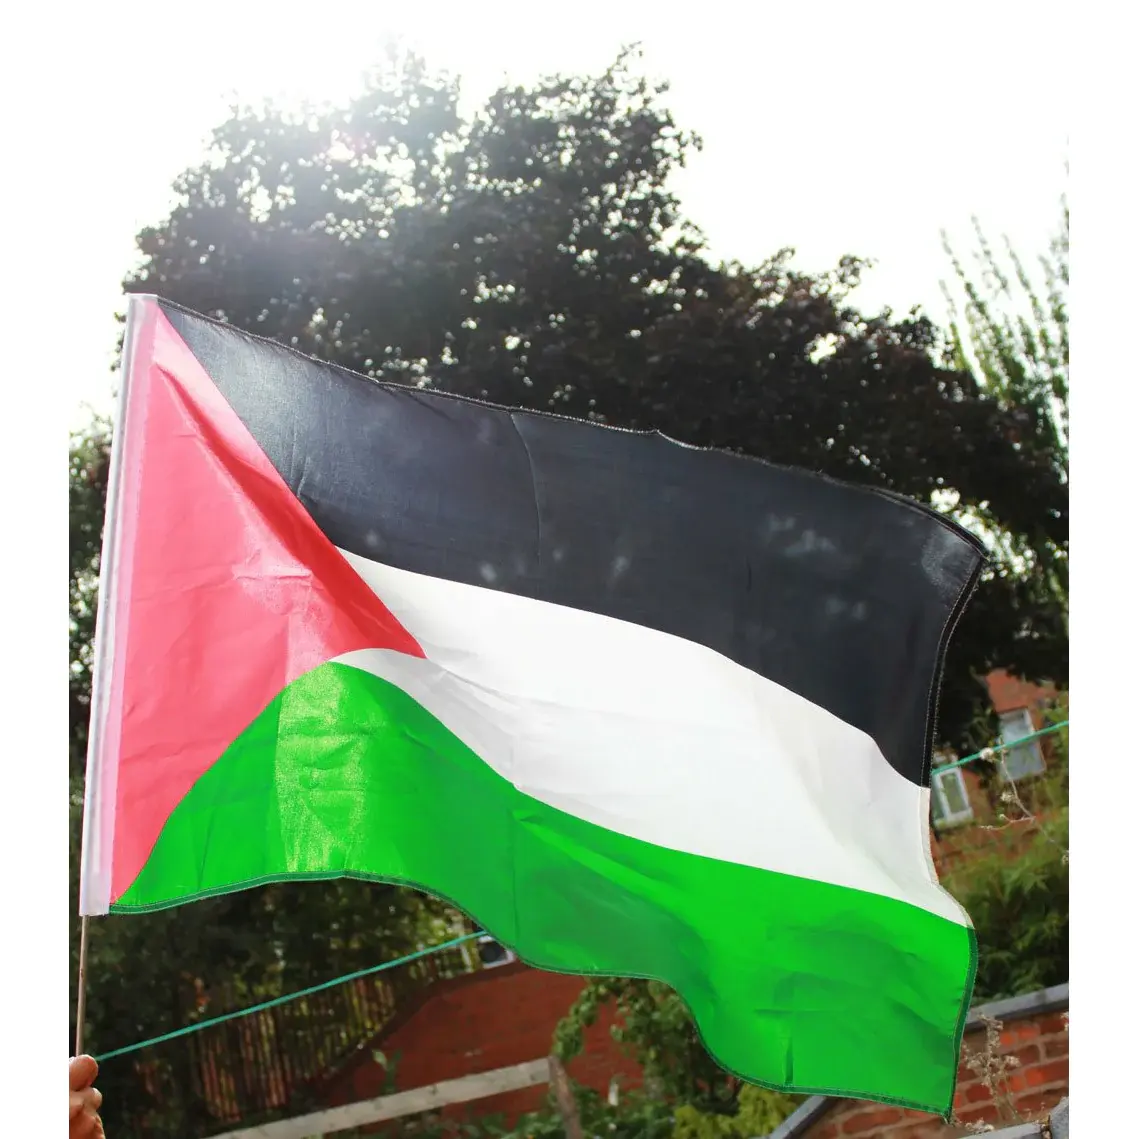 بالجملة - علم فلسطين الكبير - ازهار علم فلسطين الوطني من البوليستر